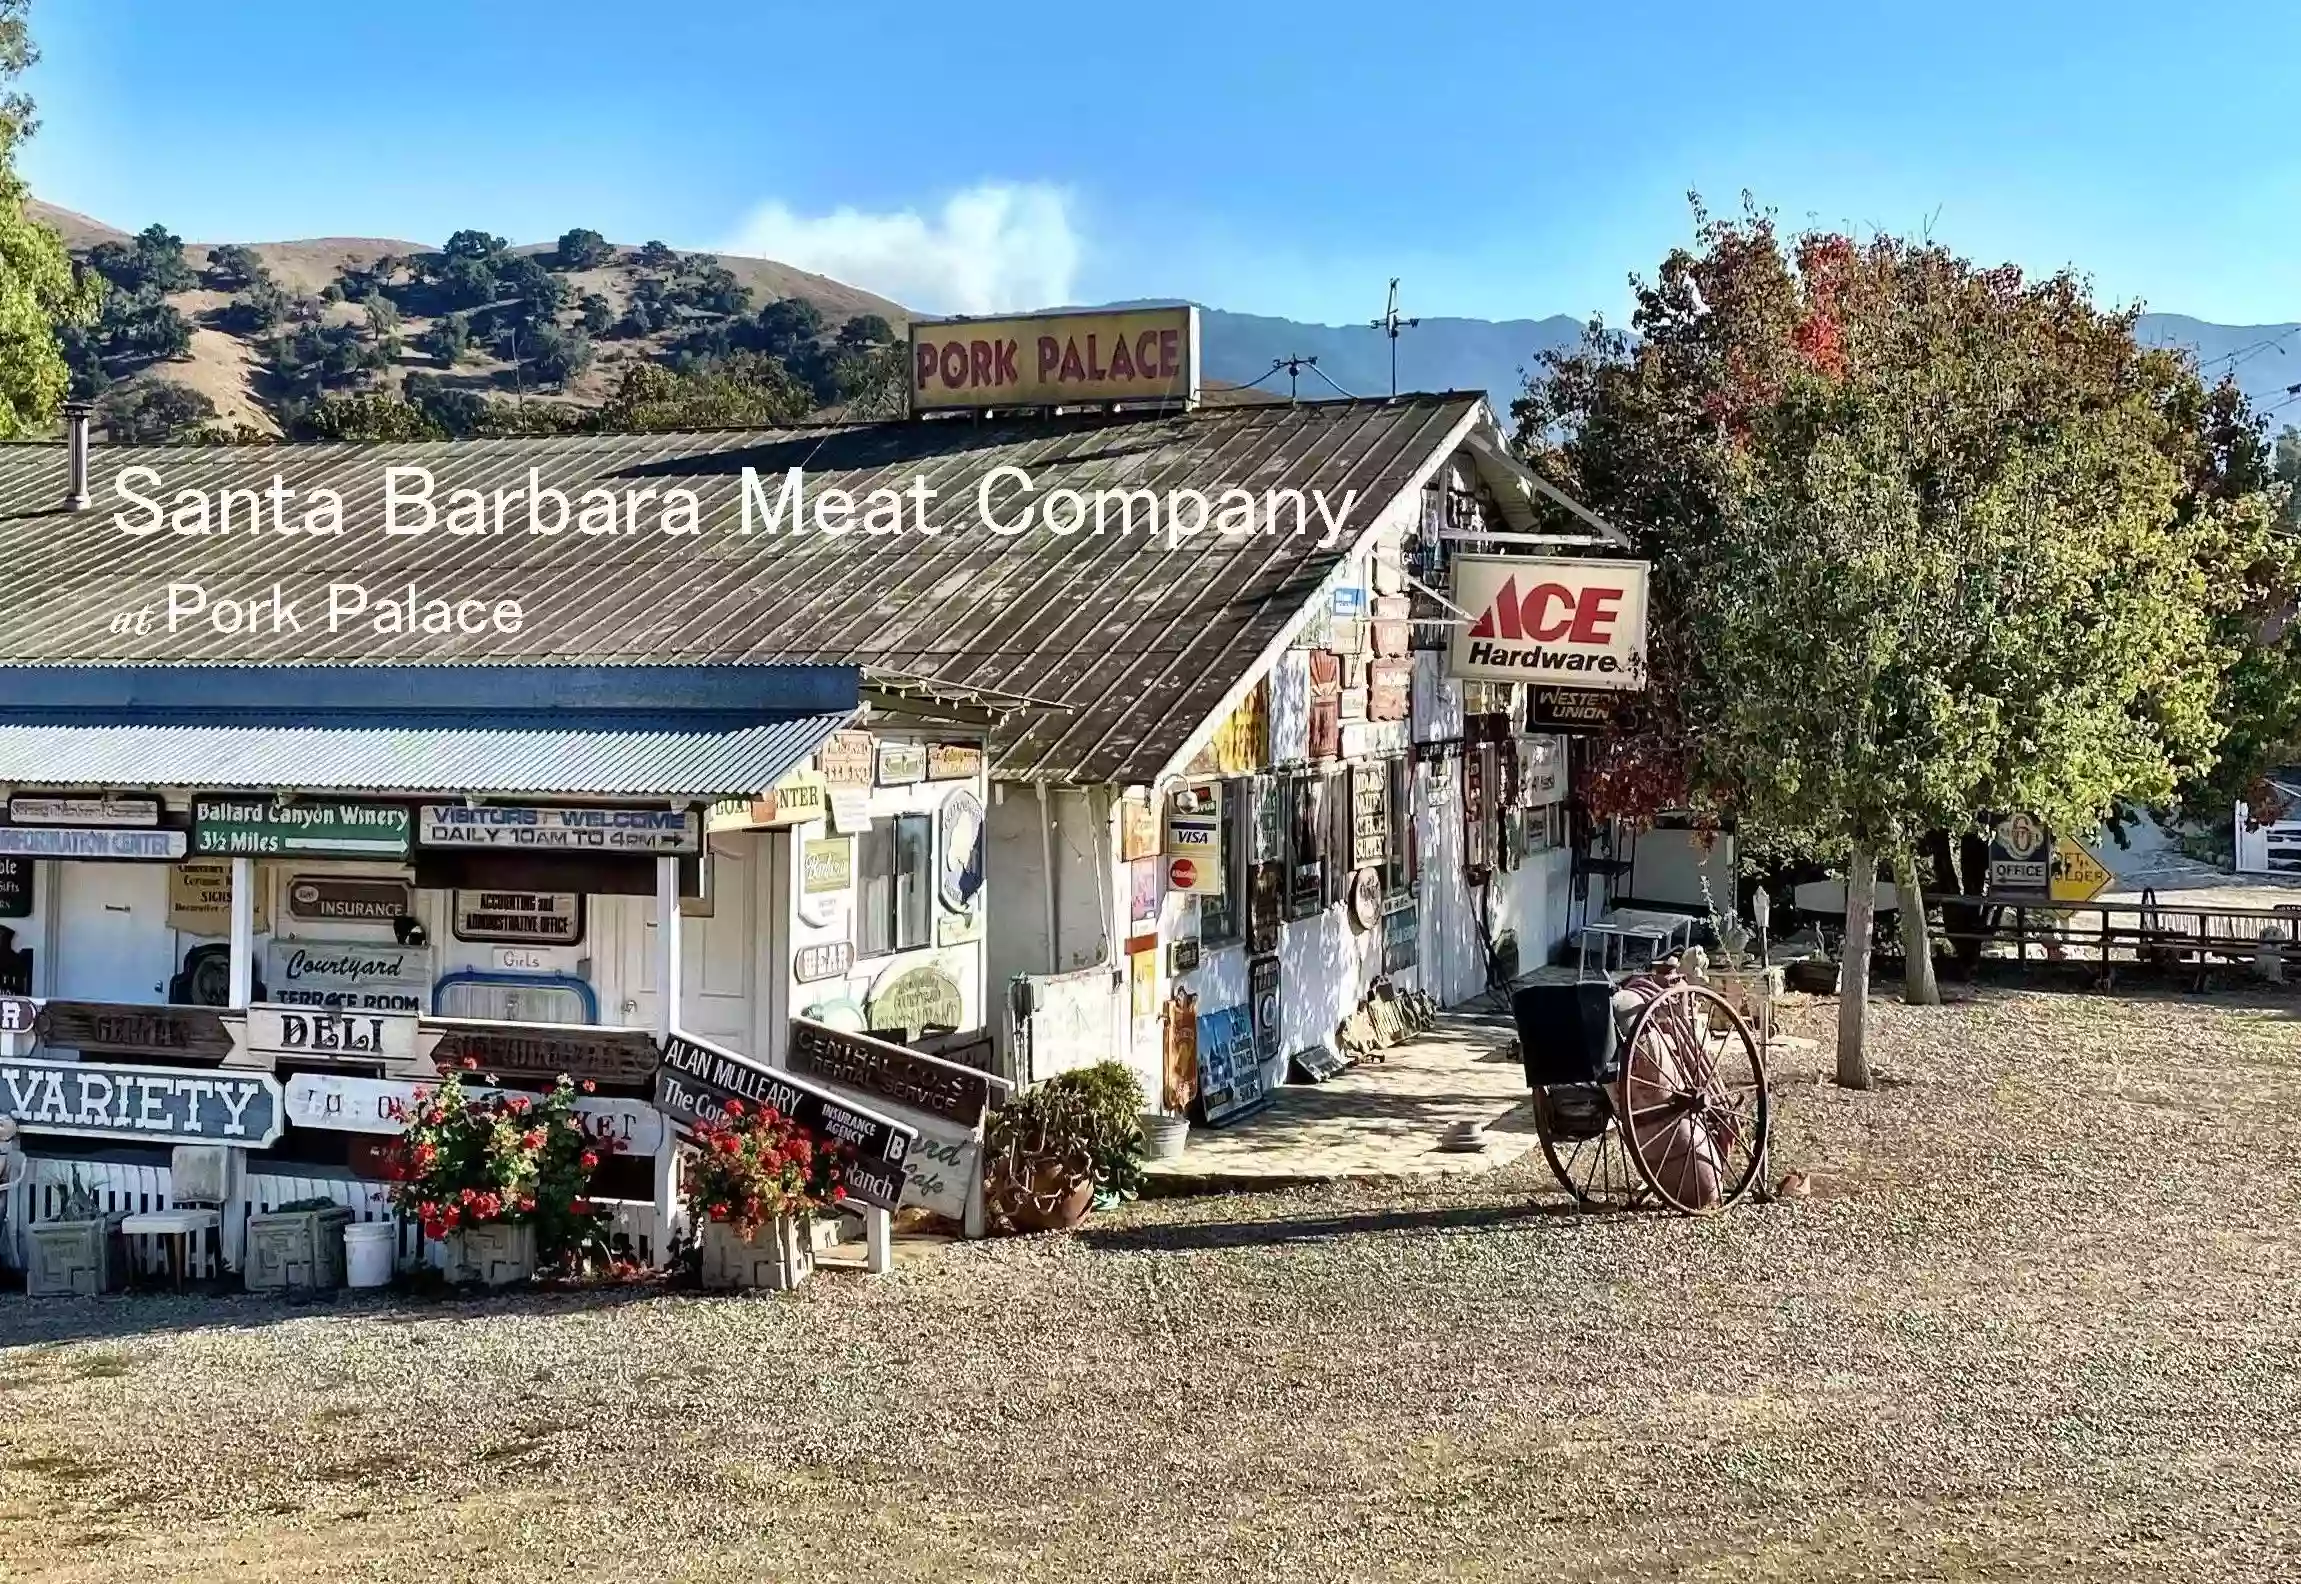 Santa Barbara Meat Company at Pork Palace